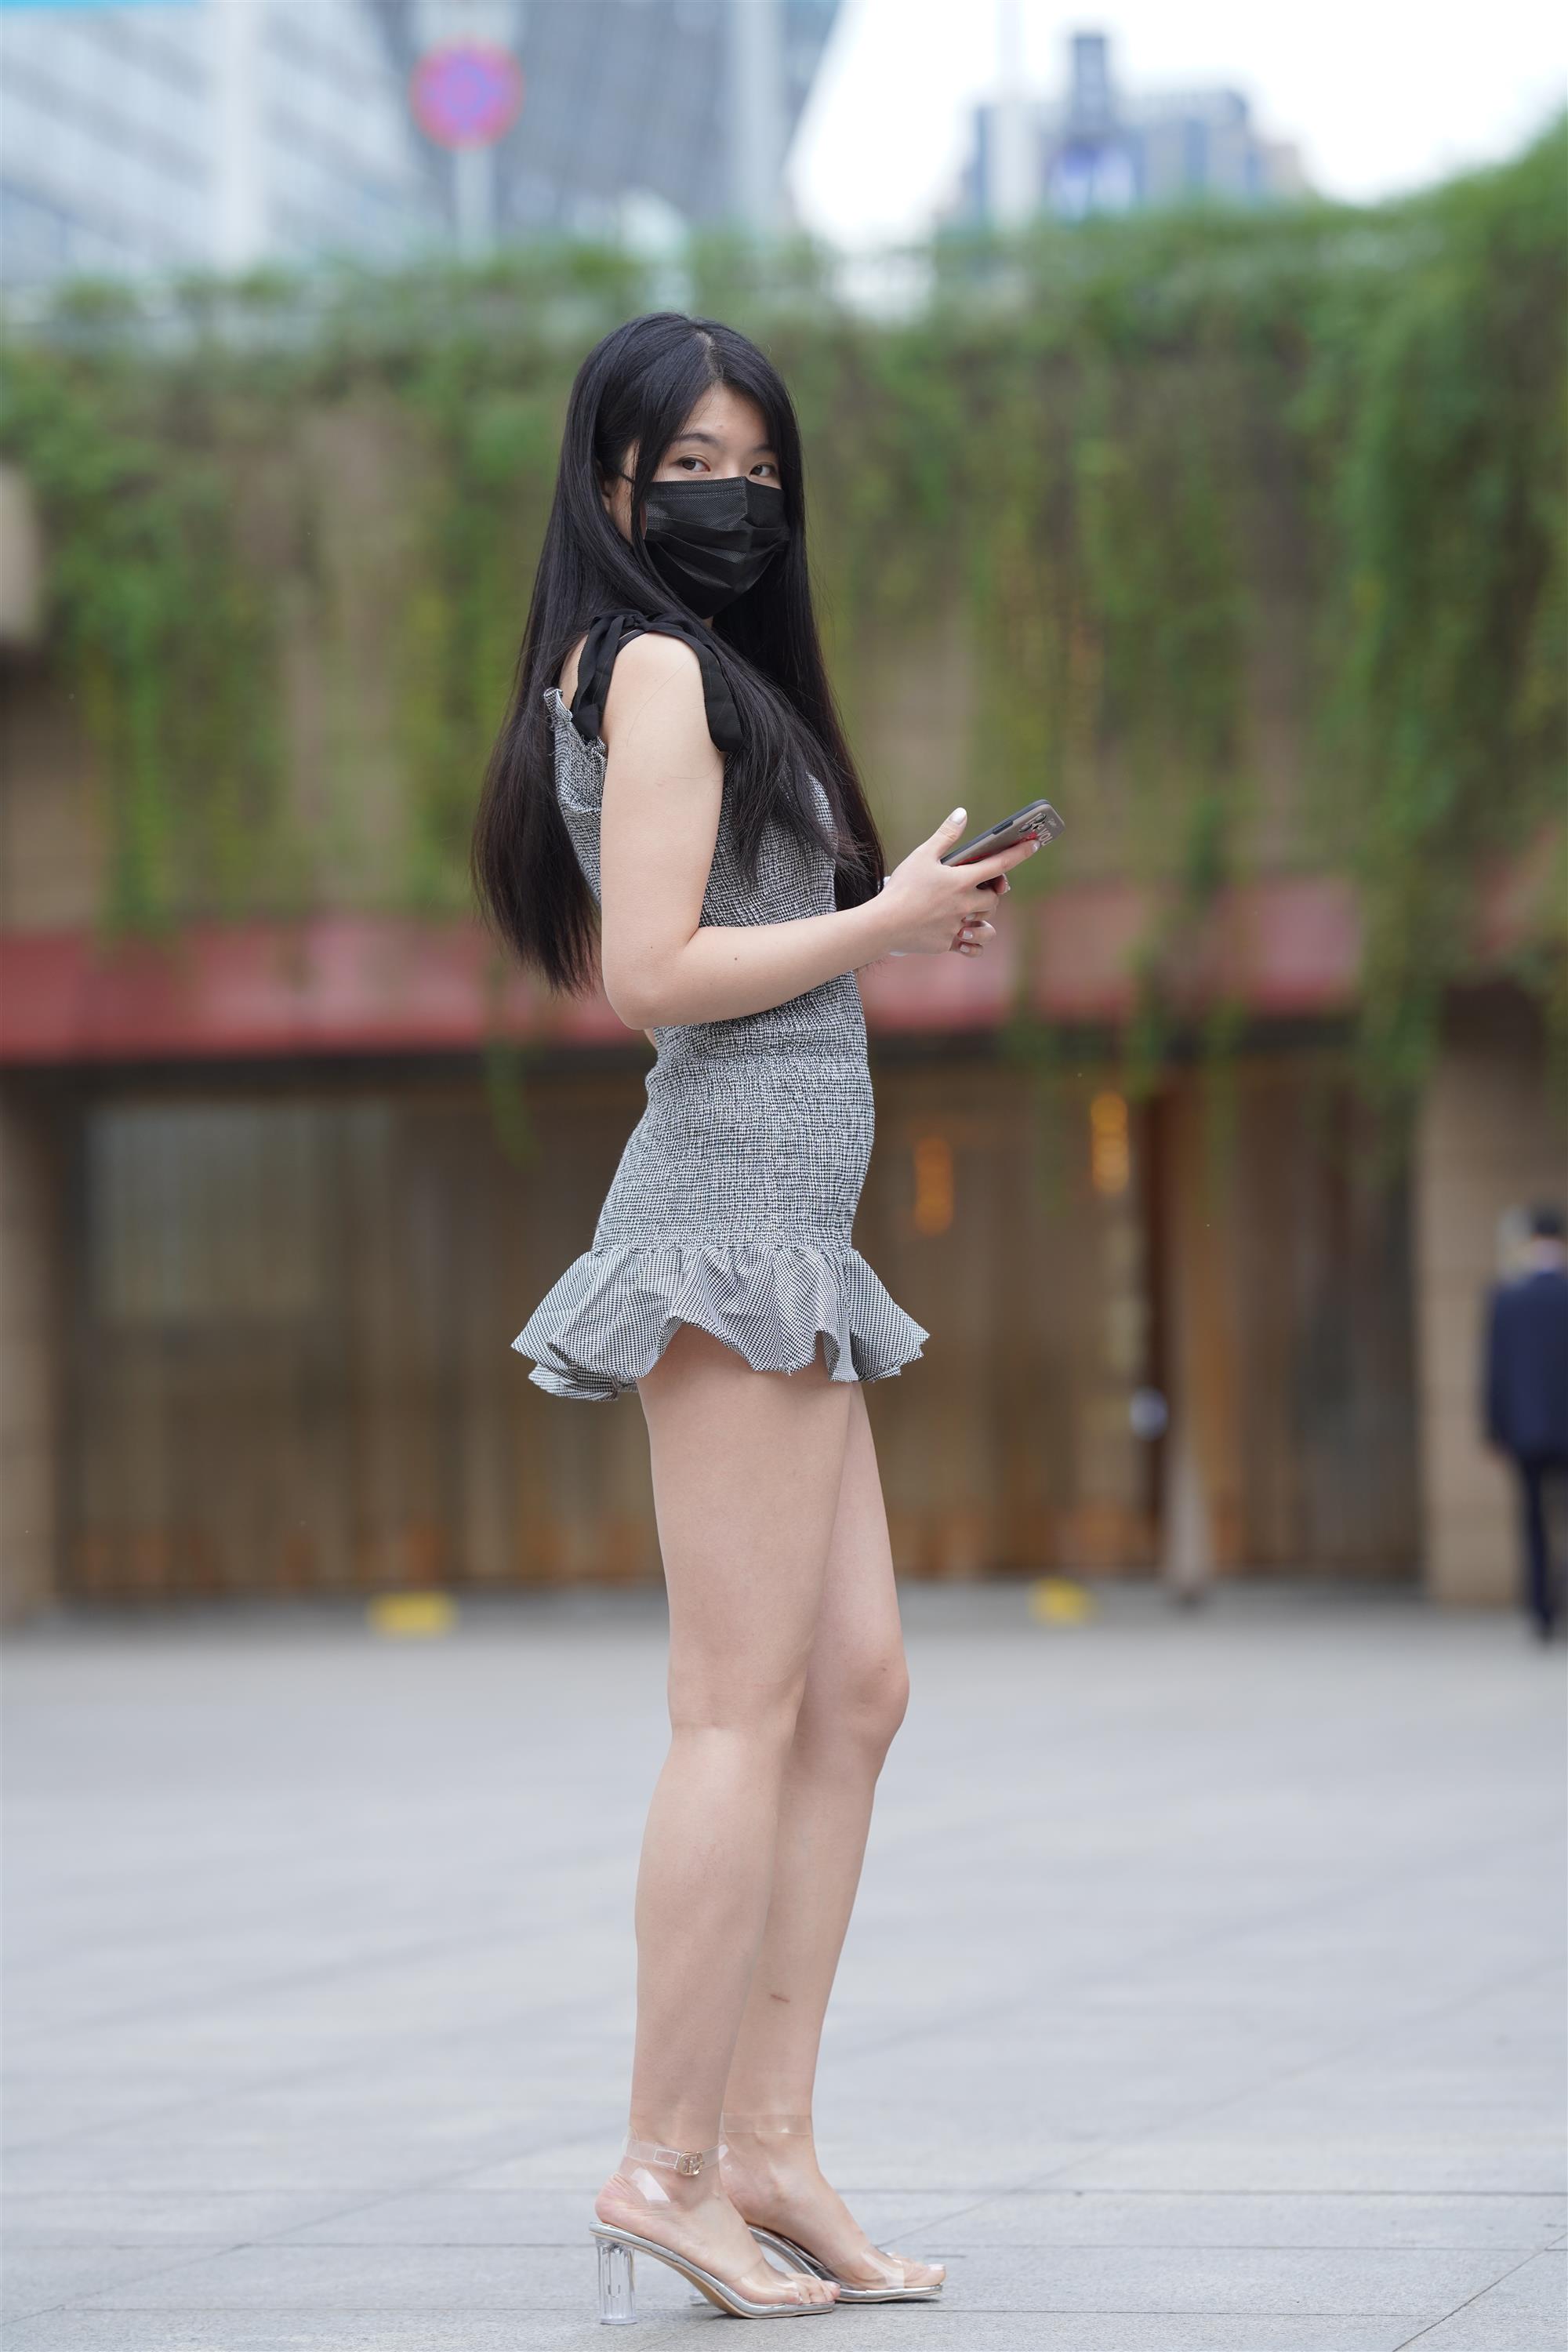 Street Girl In Short Skirt - 286.jpg